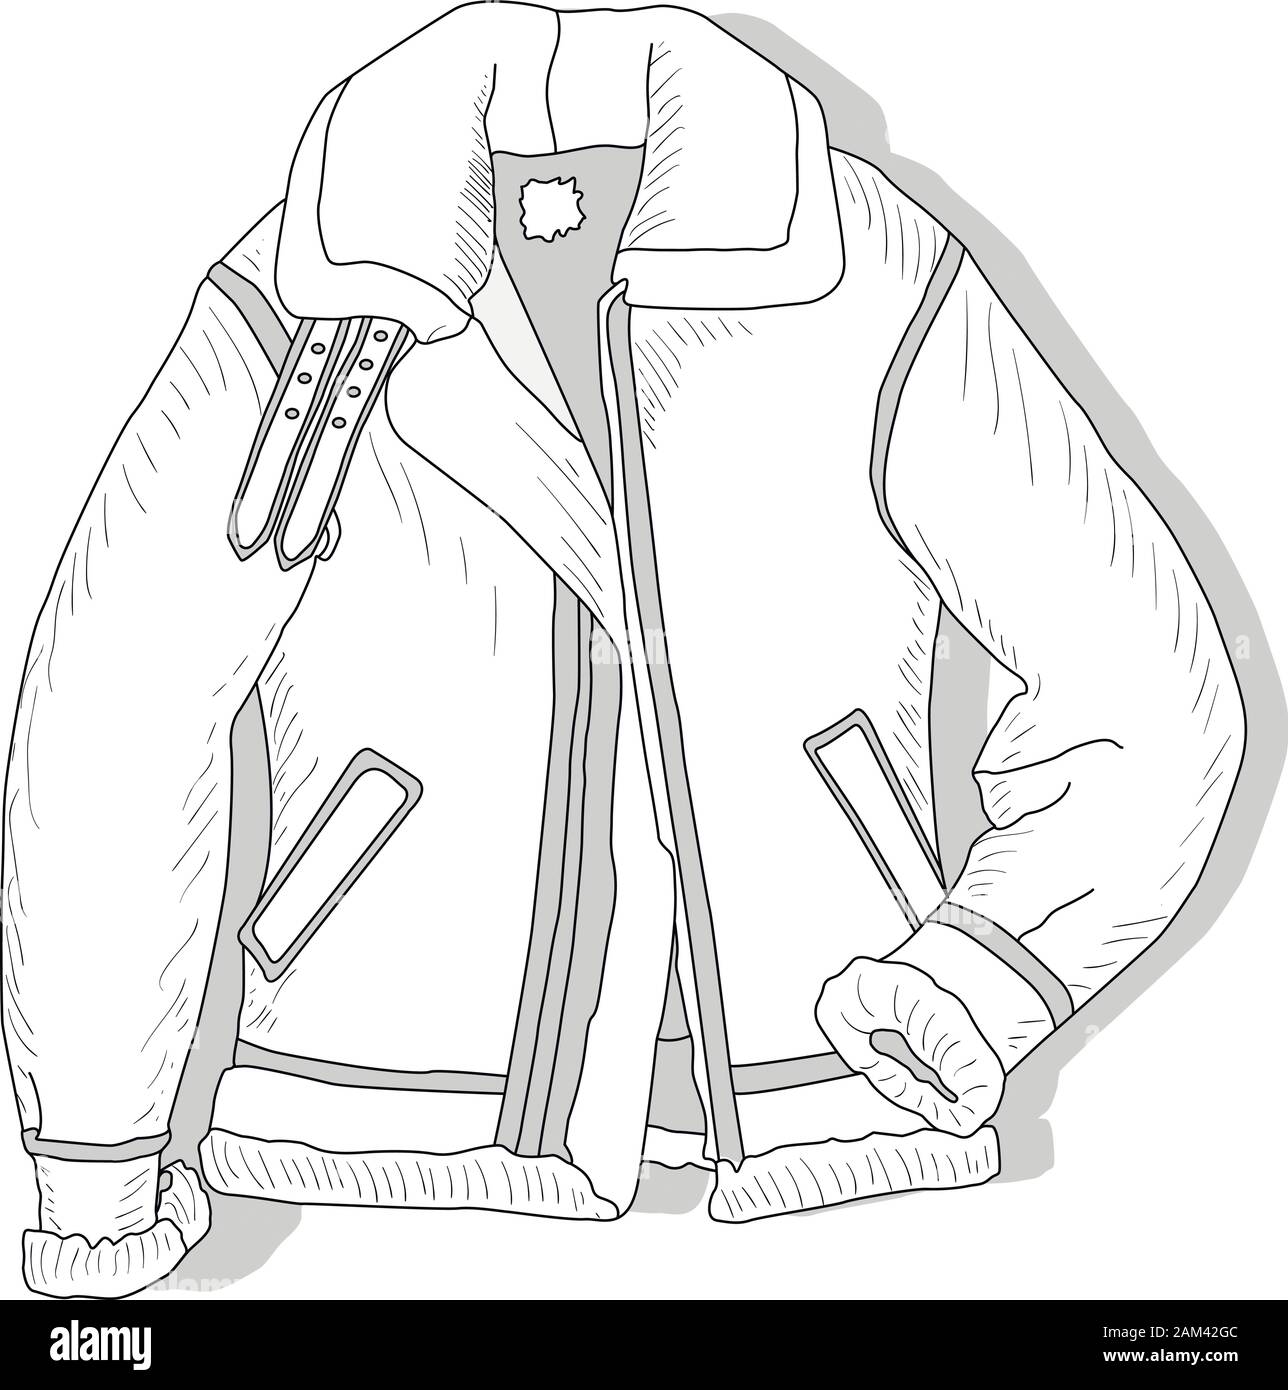 Pilot Jacke. Bomber. Vector Illustration der männlichen pilot Jacket auf Weiß. Stock Vektor